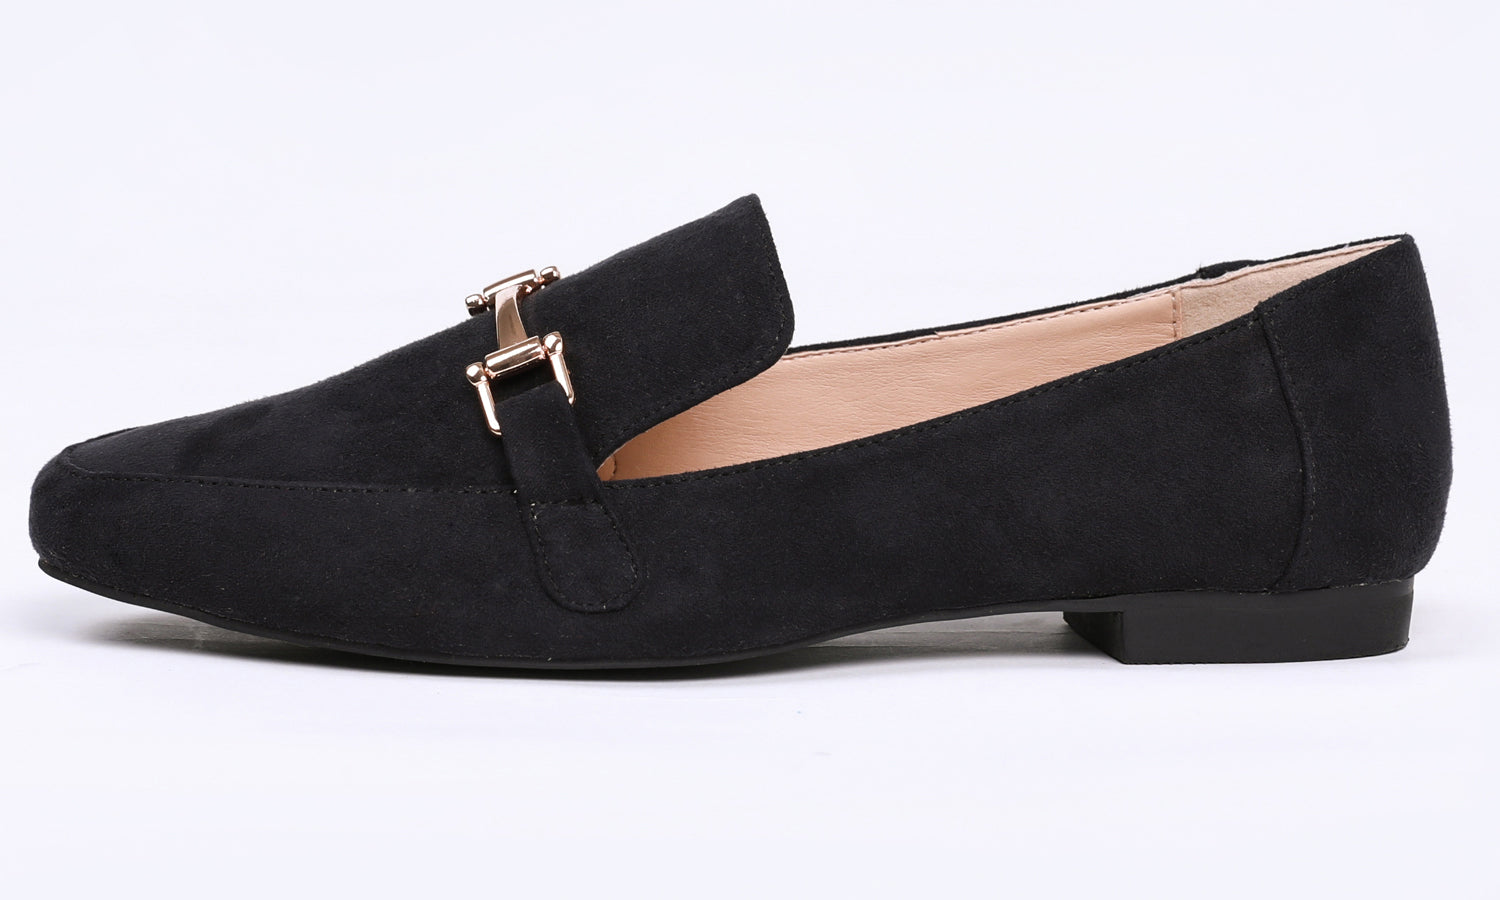 Feversole Women's Fashion Trim Deco Loafer Flats Black Faux Suede